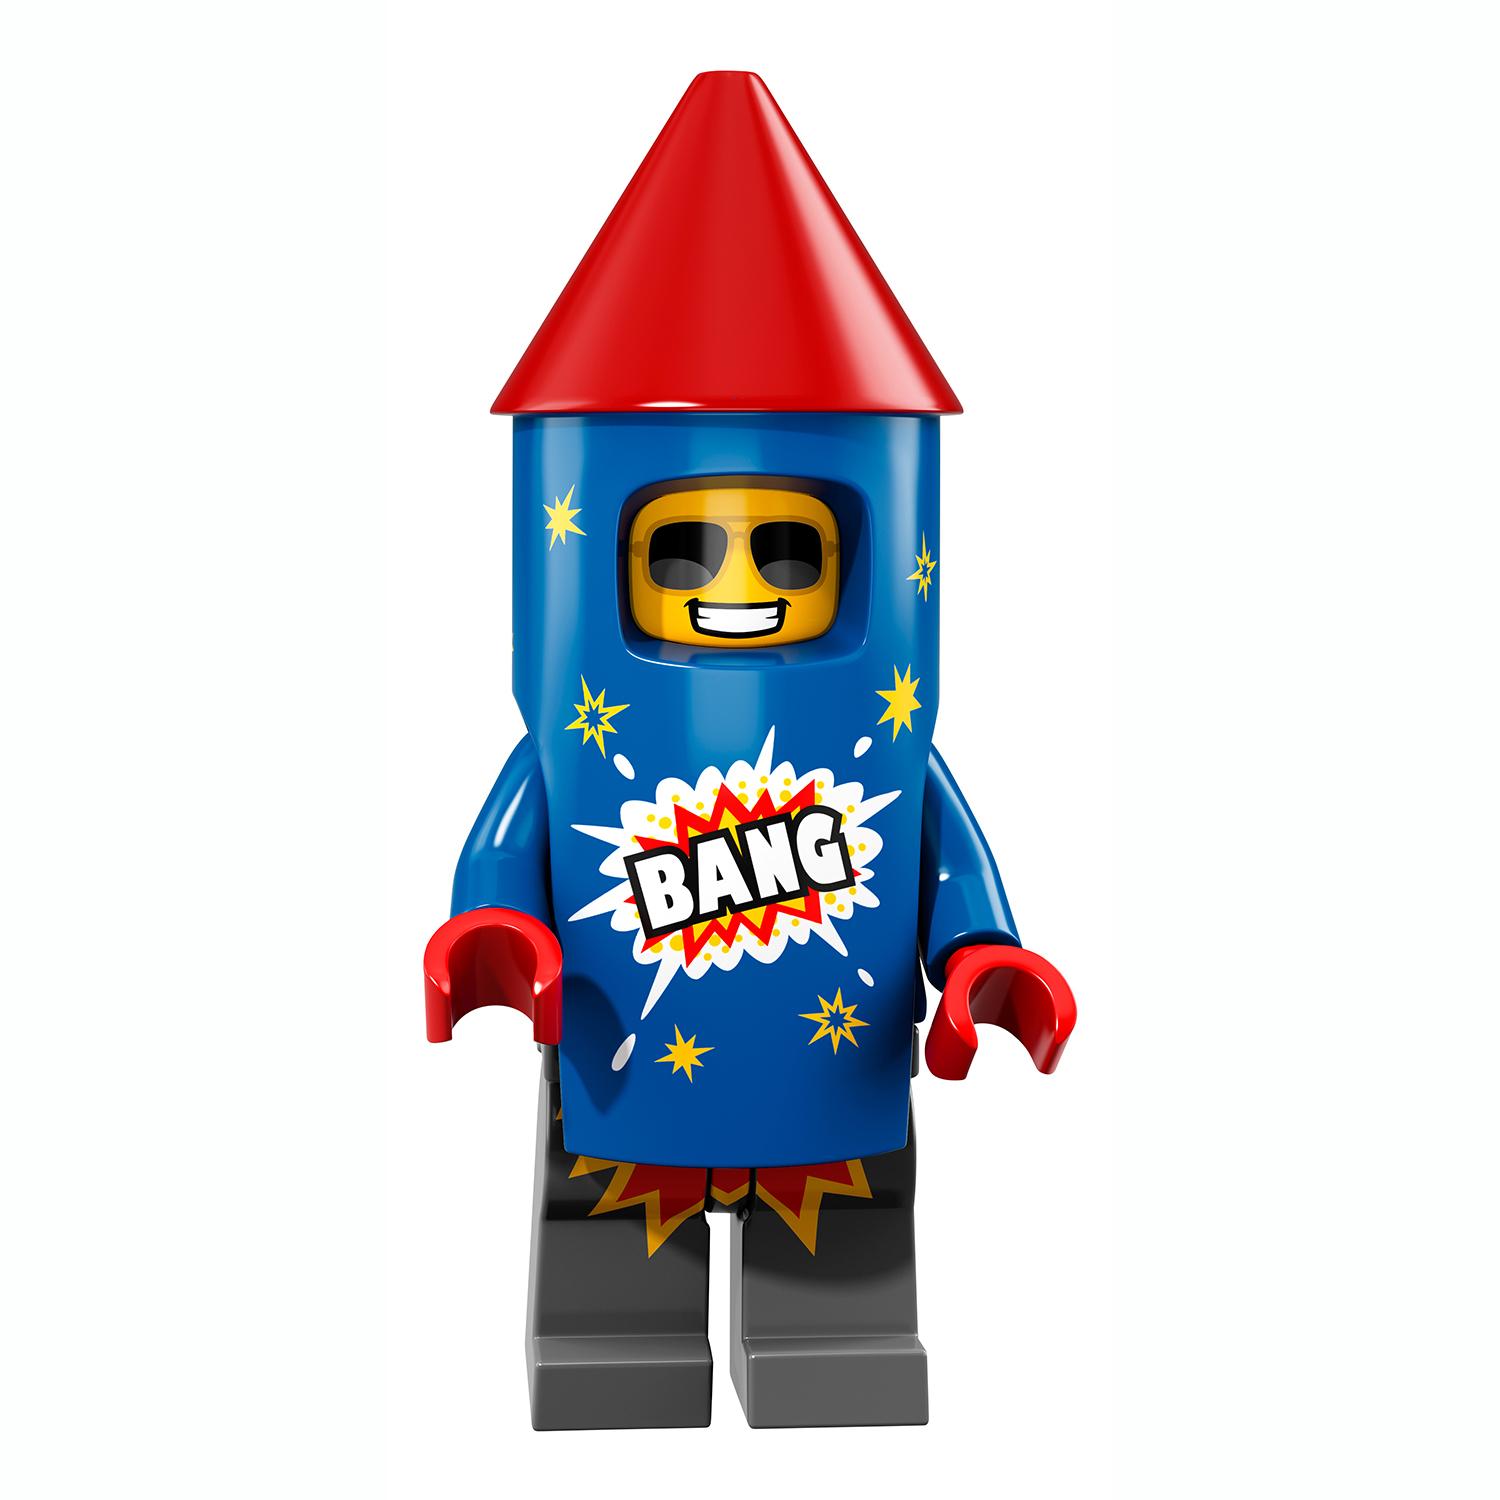 Lego Minifigures 71021-6 Парень-фейерверк